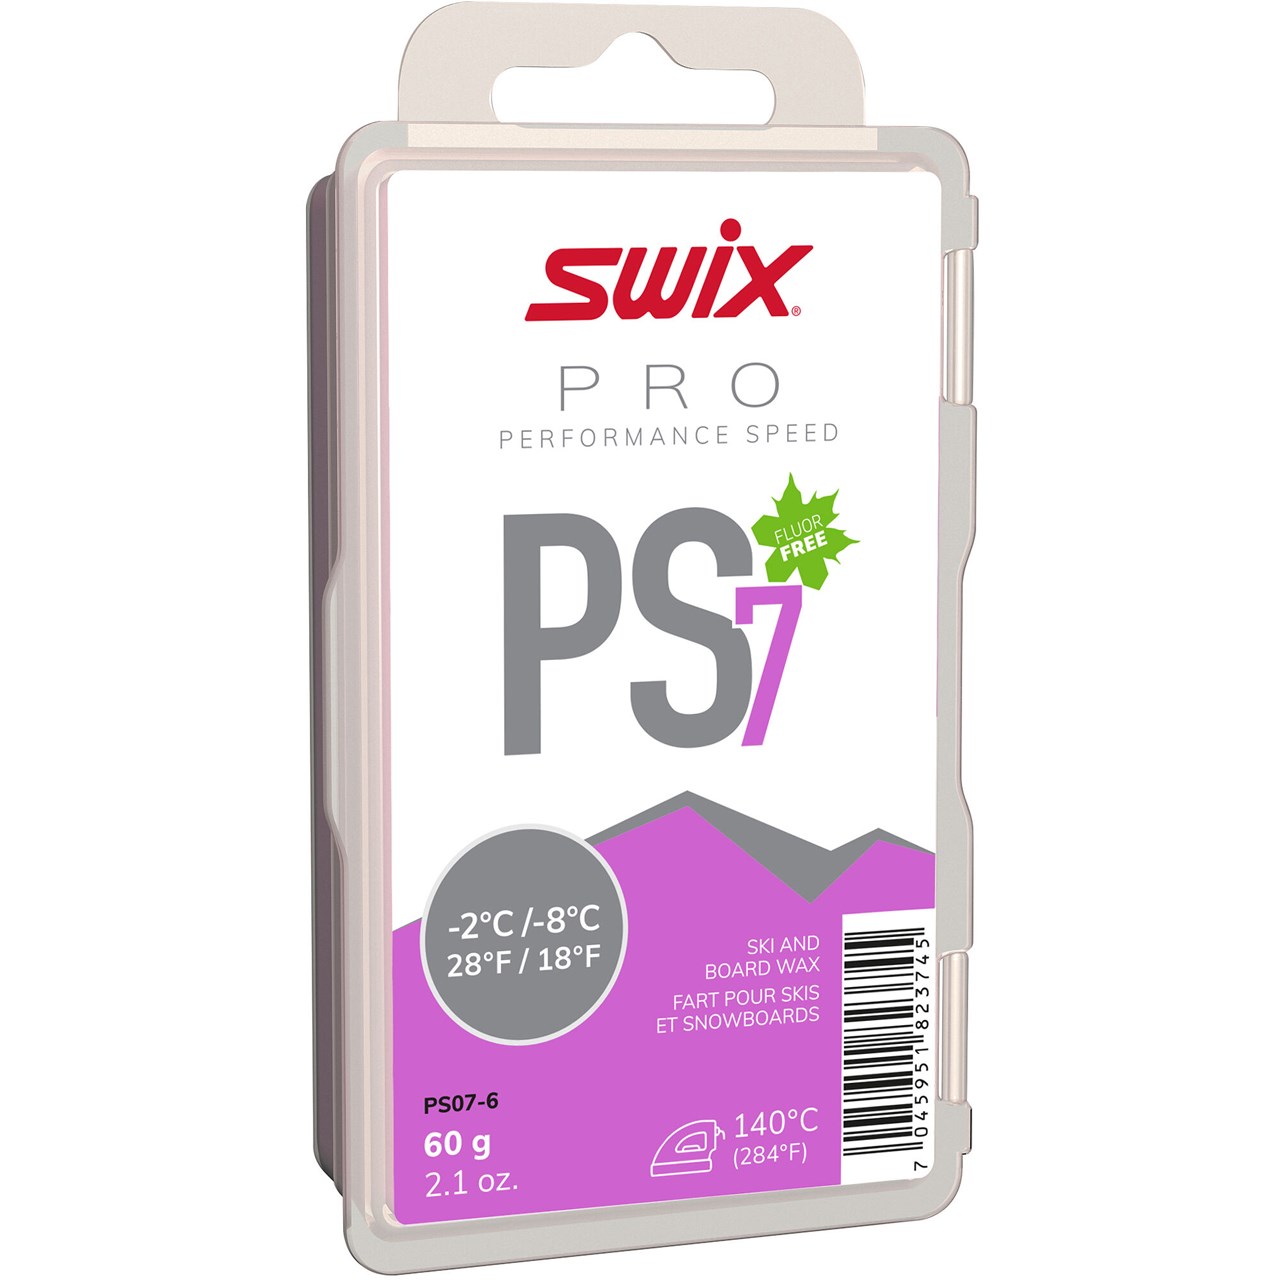 Swix  PS7 Violet, -2°C/-8°C, 60g